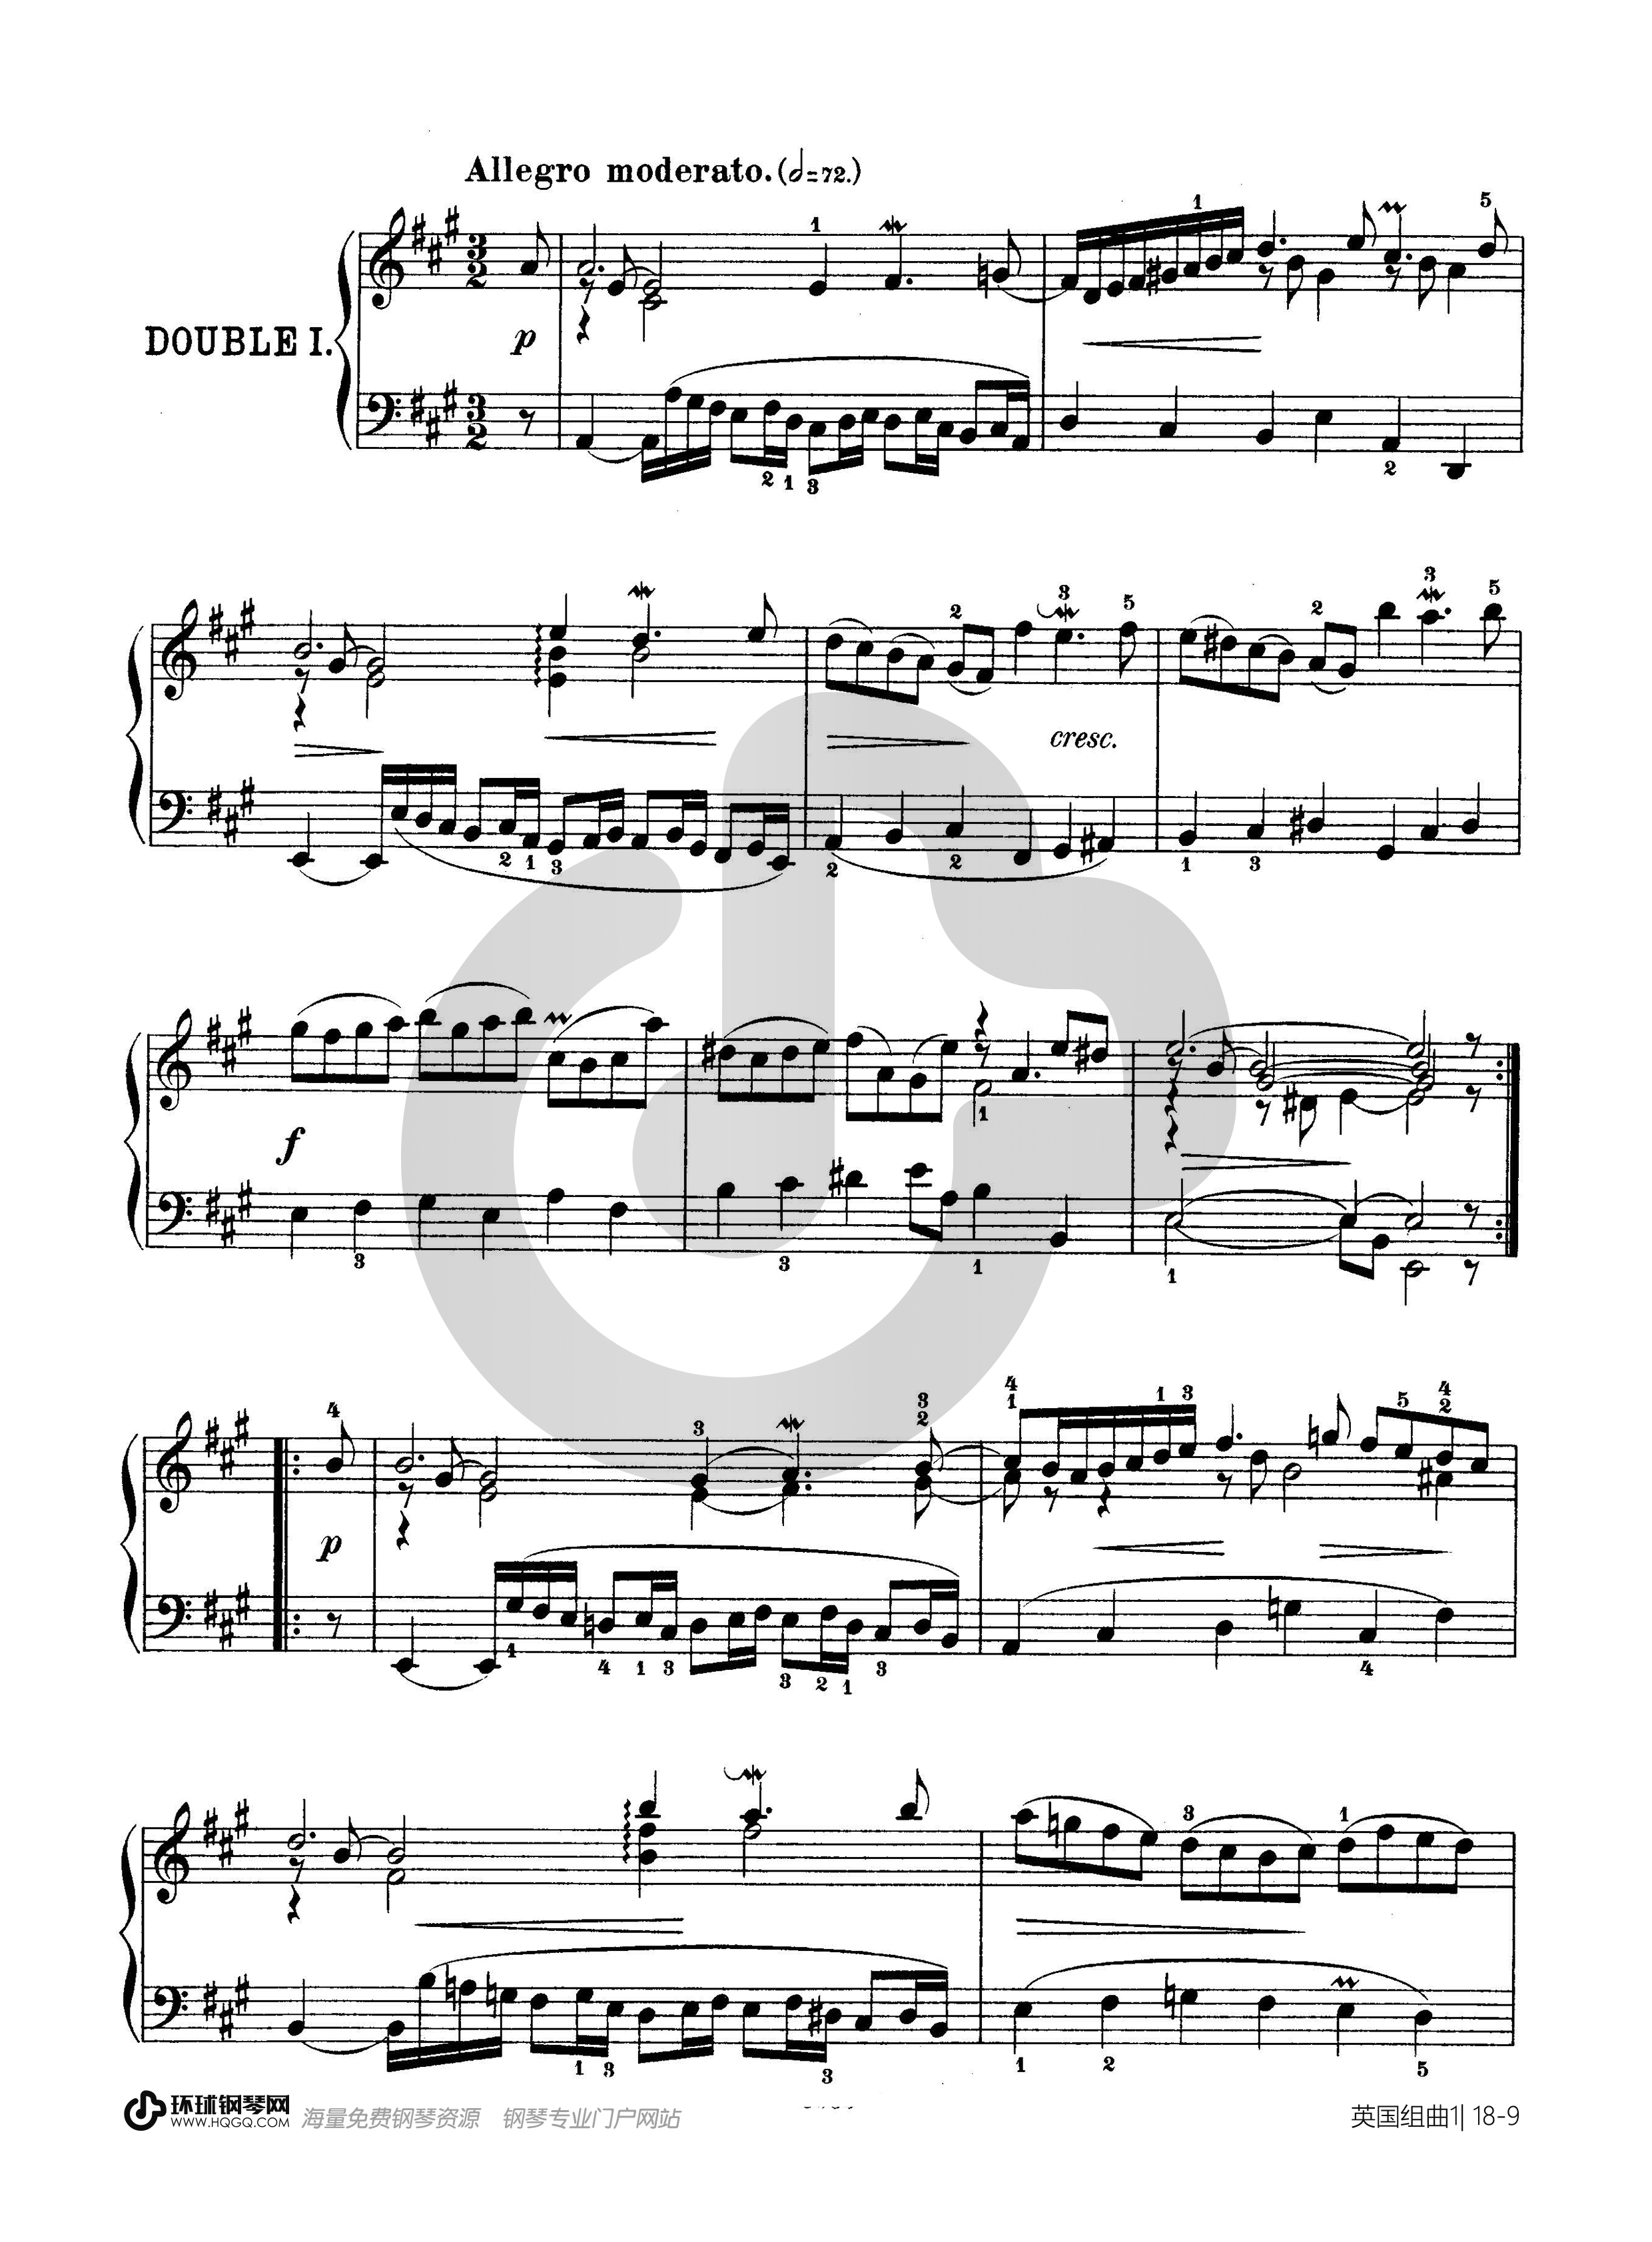 第一首BWV 806（选自《英国组曲》）